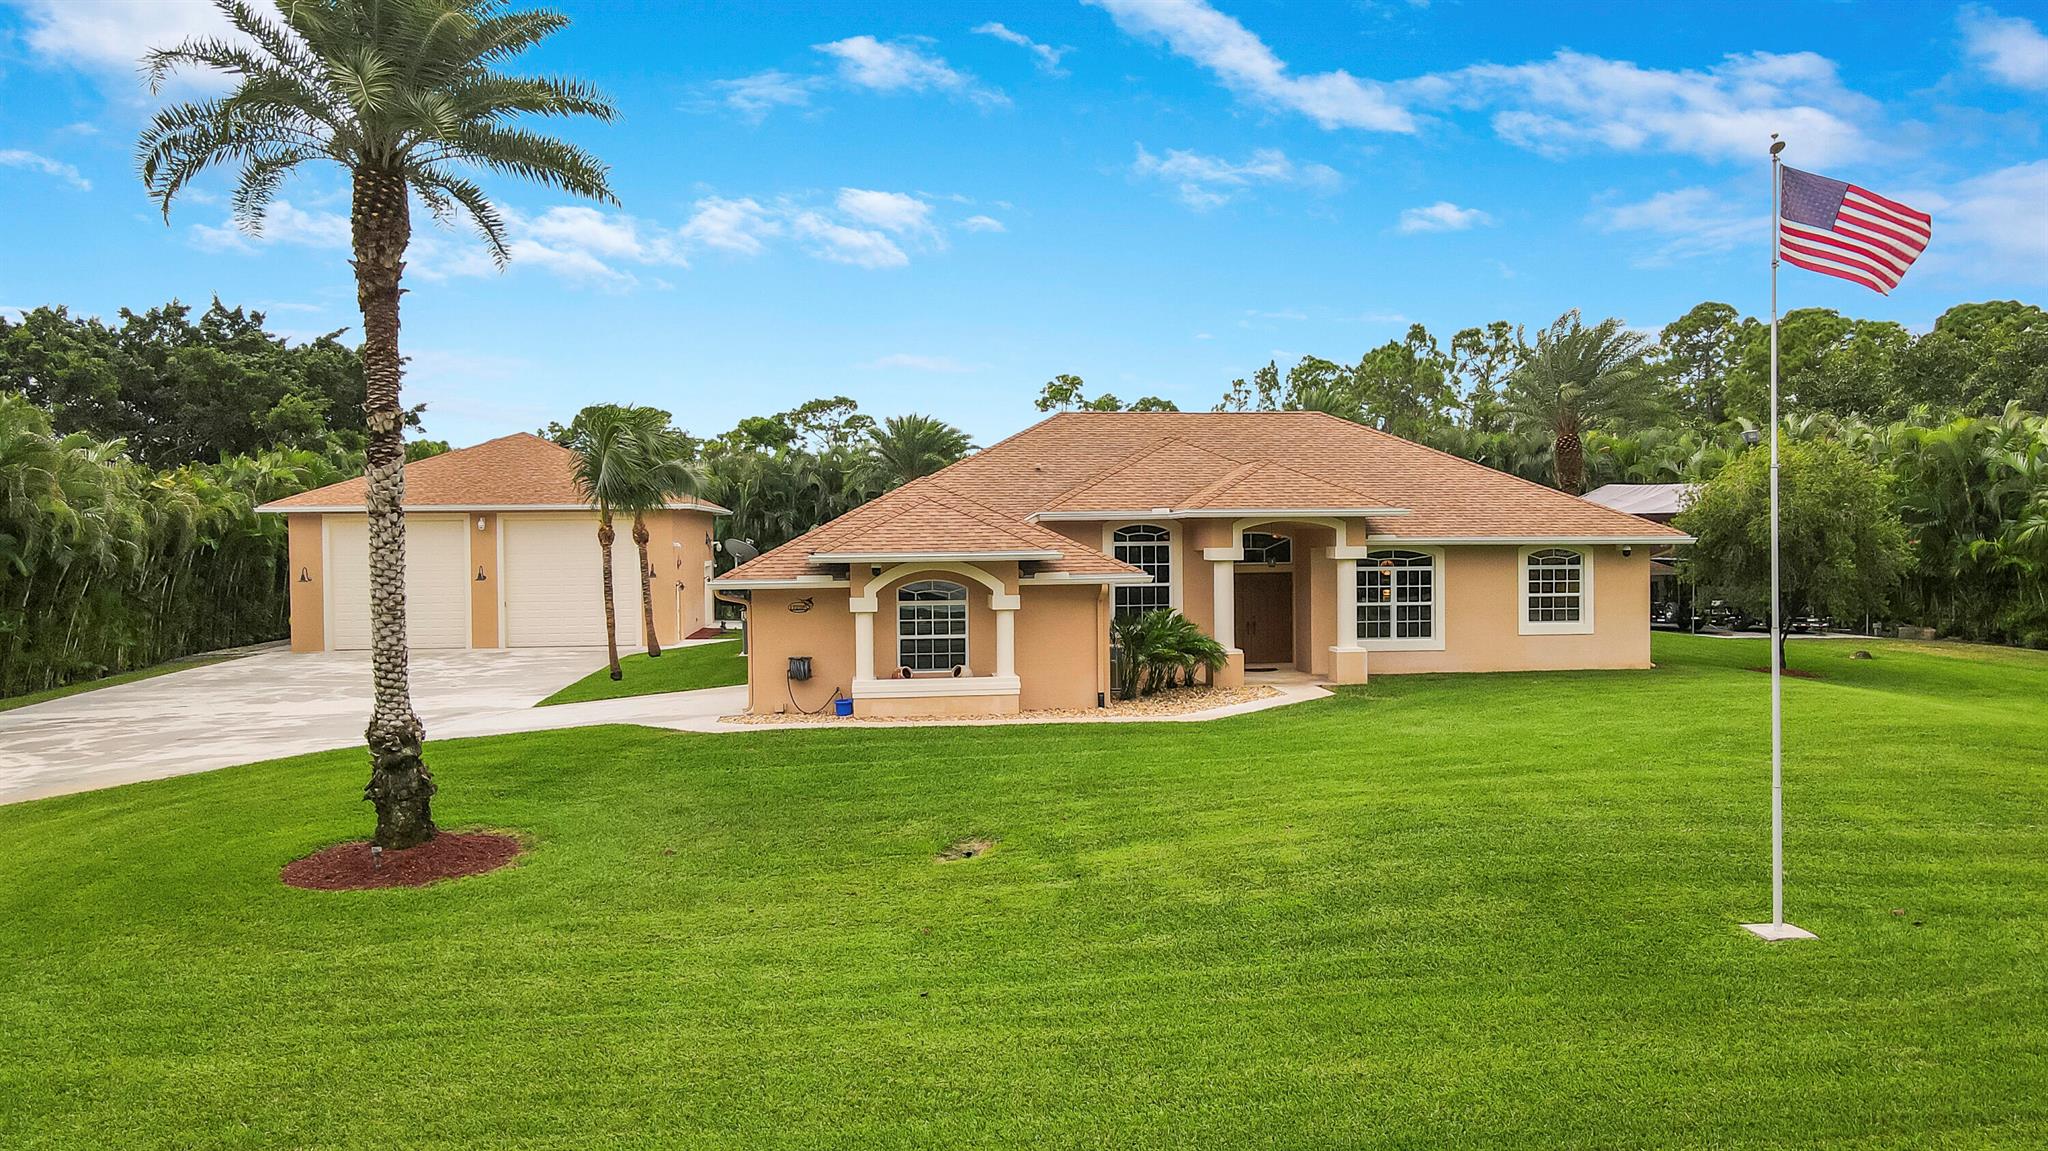 wLWd Jupiter Florida Real Estate For Sale